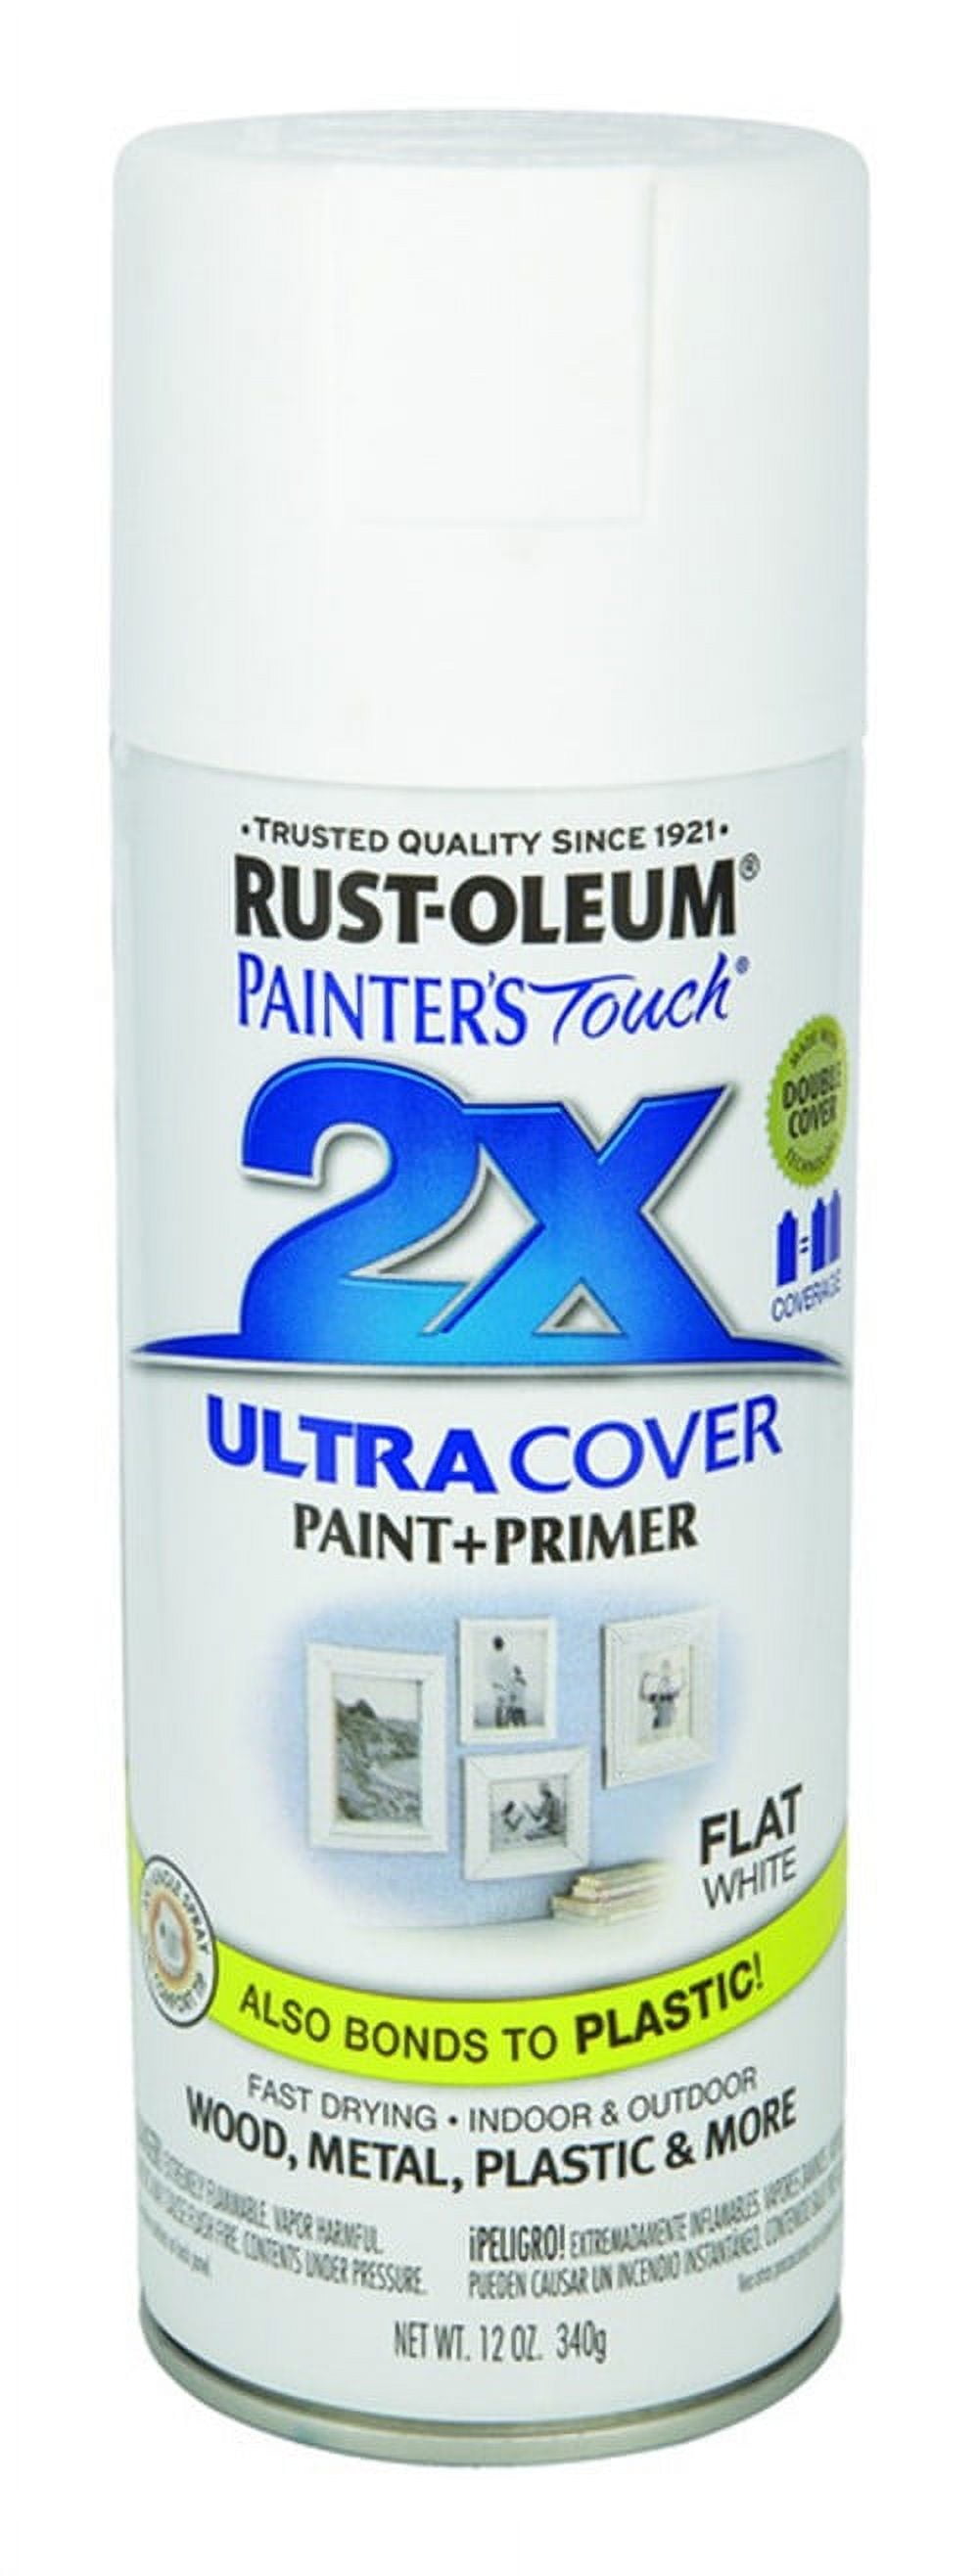 Rust Oleum Painter's Touch 2X Multipurpose Paint, Flat Black - 12 oz can